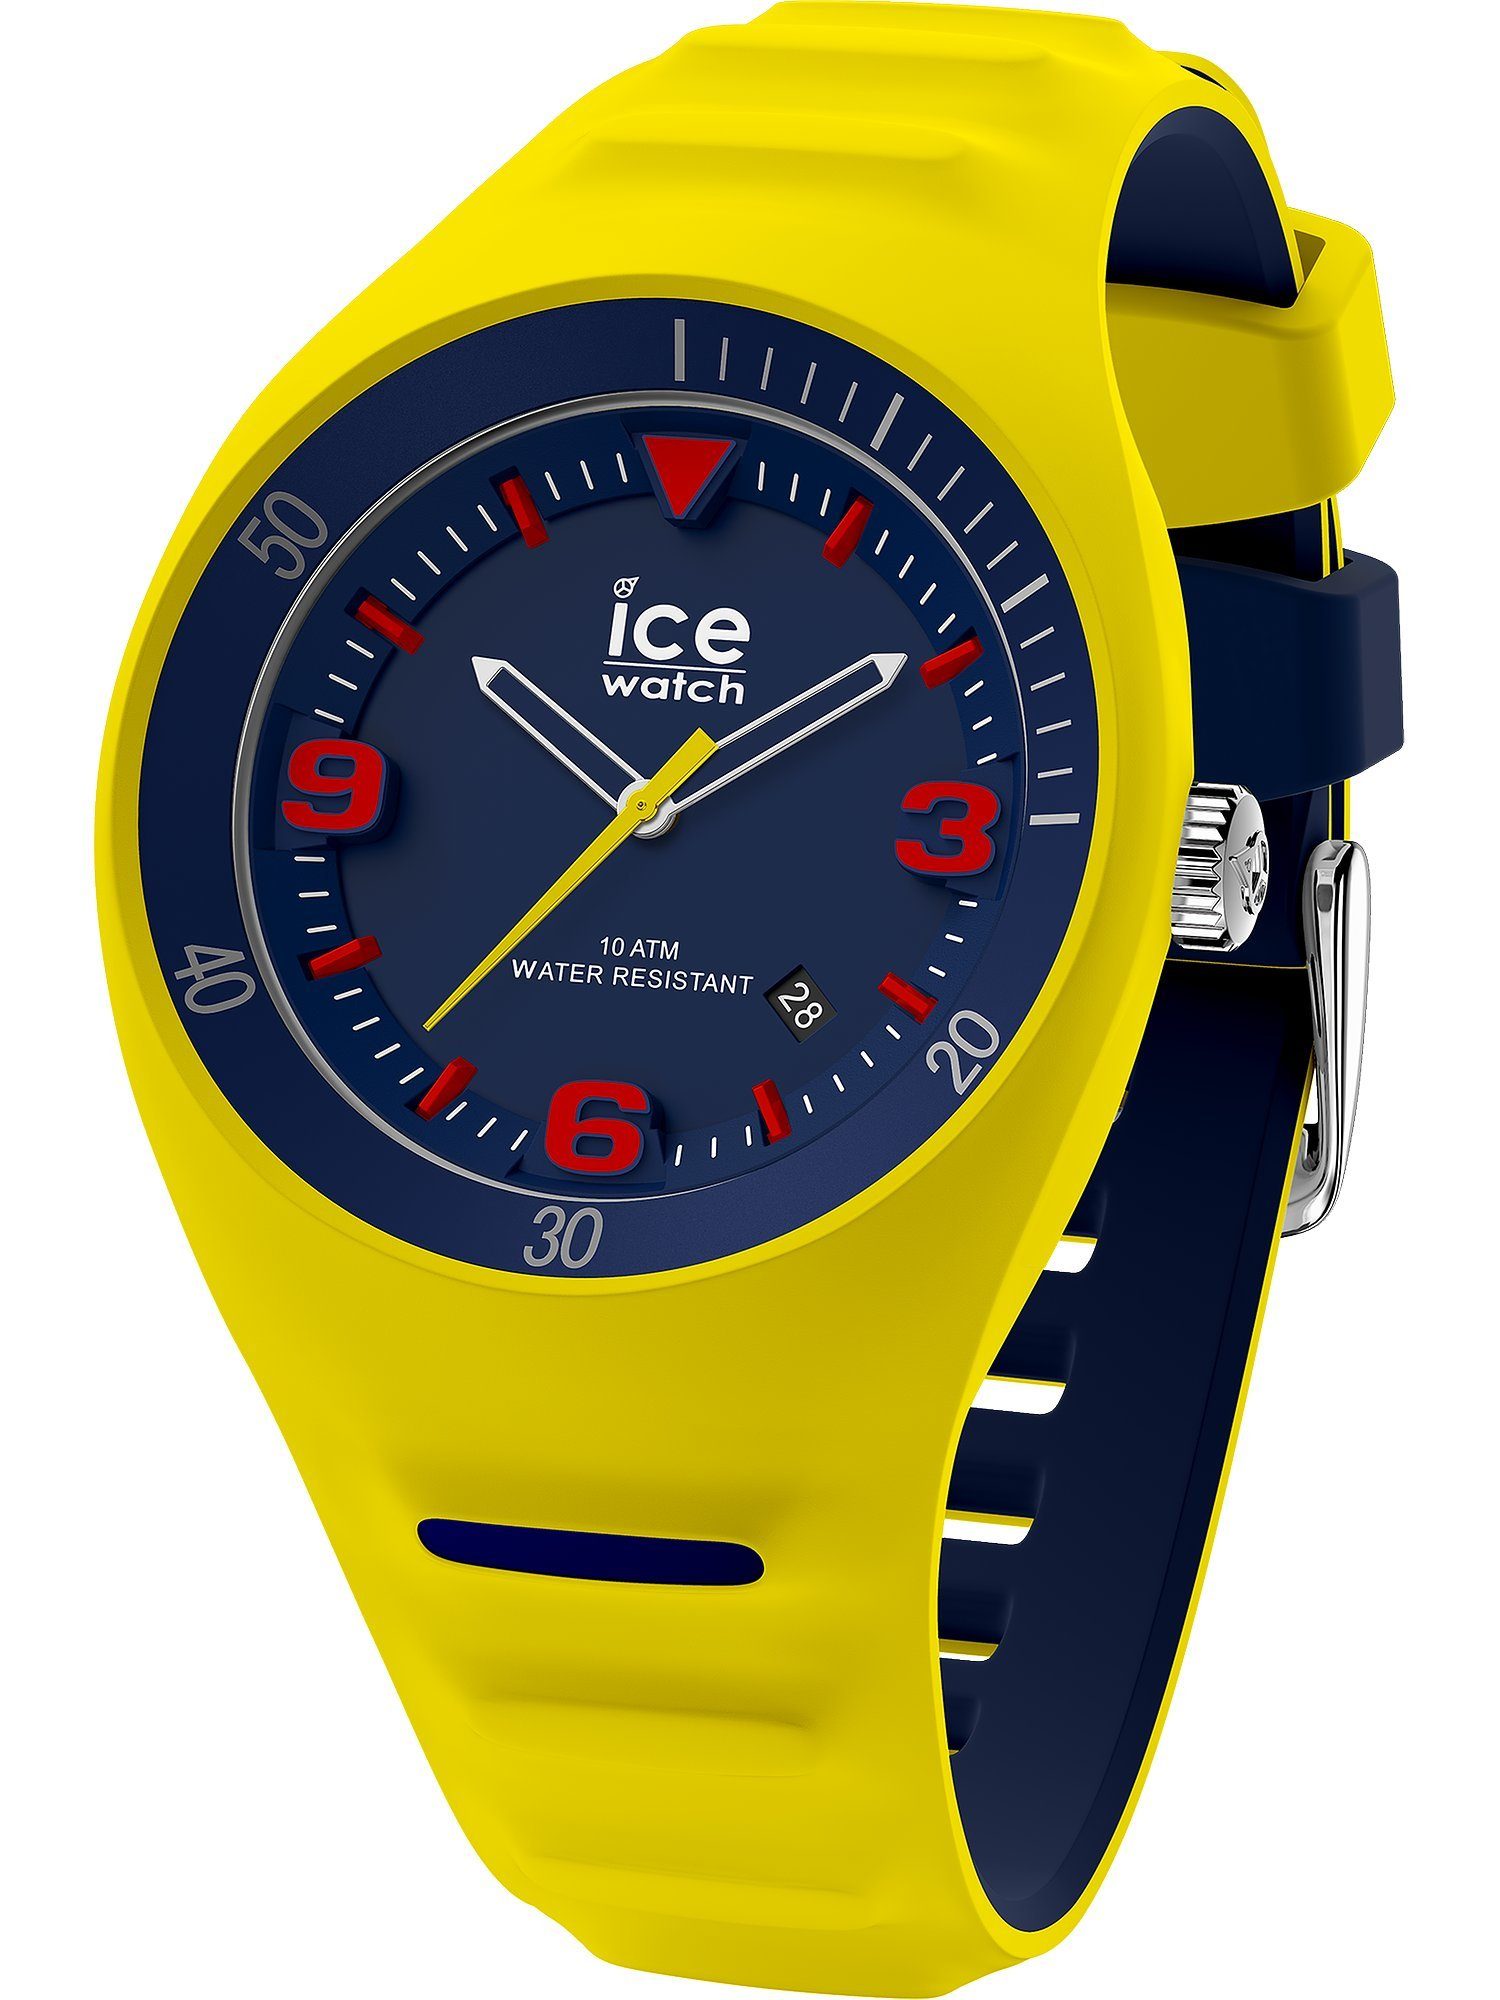 ICE Klassikuhr Herren-Uhren Quarzuhr Analog Watch ice-watch Quarz, gelb blau,